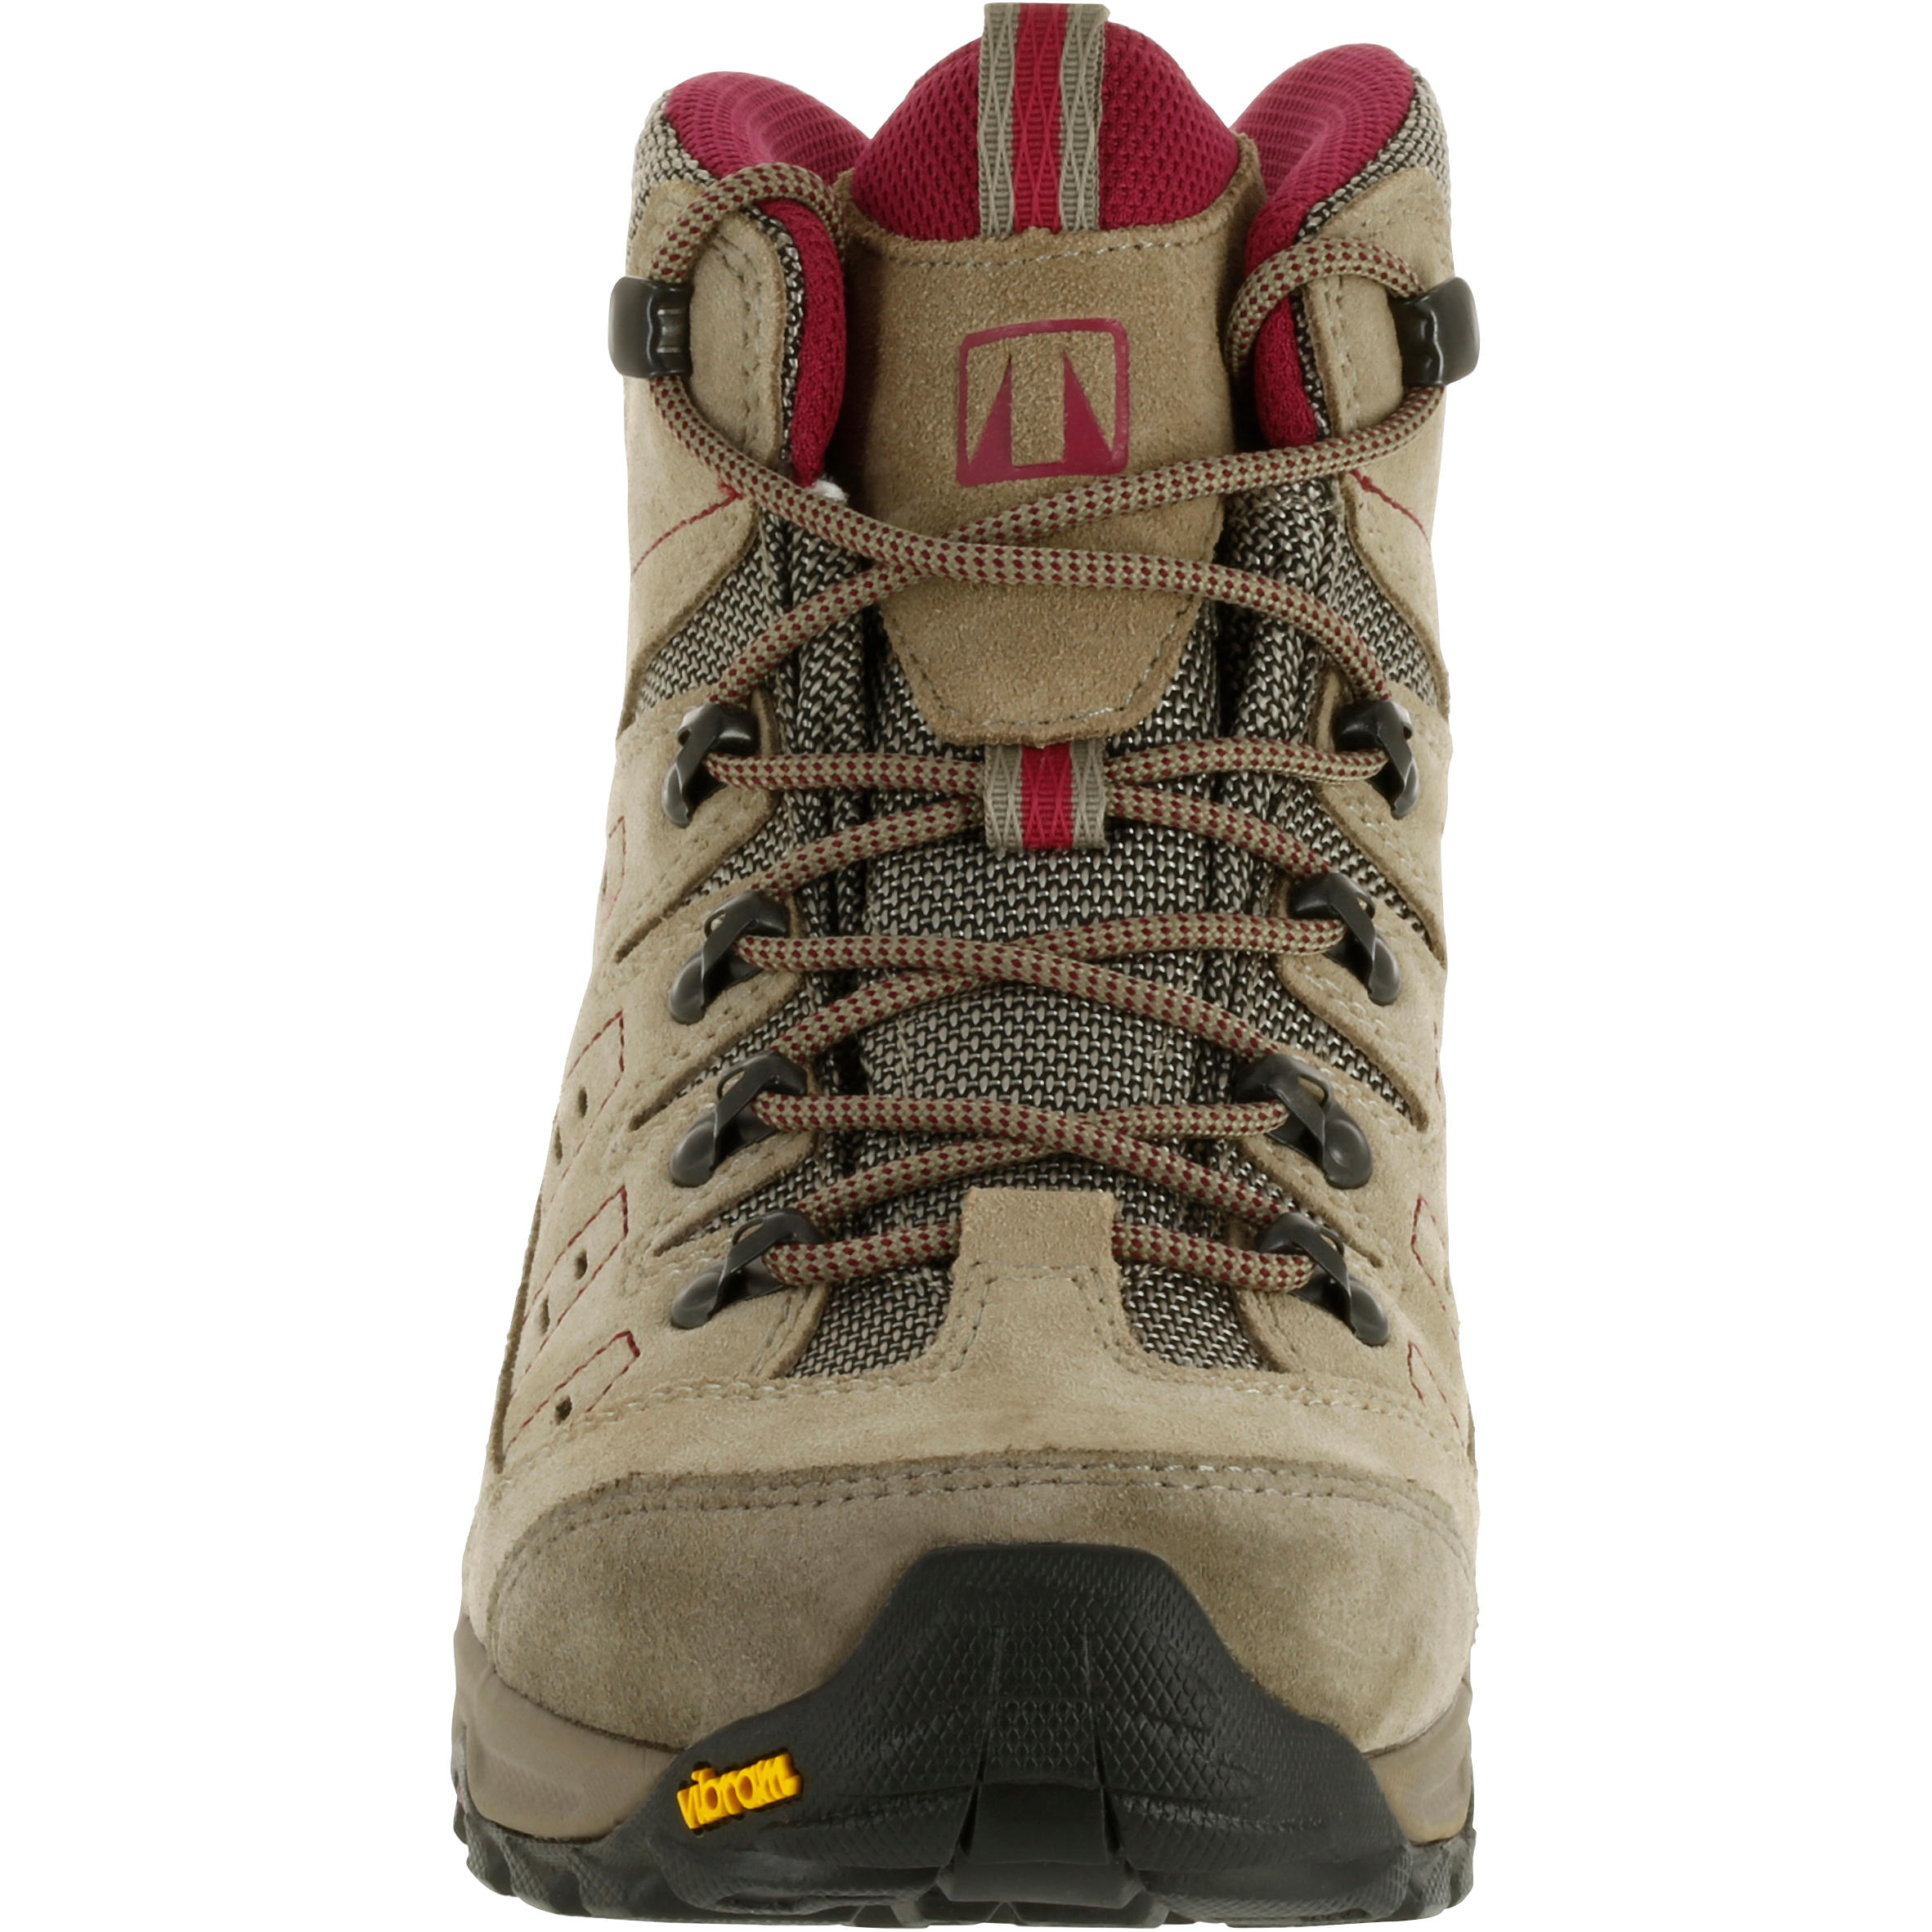 Waterproof Trekking Shoes - GORETEX - VIBRAM-TECNICA STARCROSS - W Beige 3/13